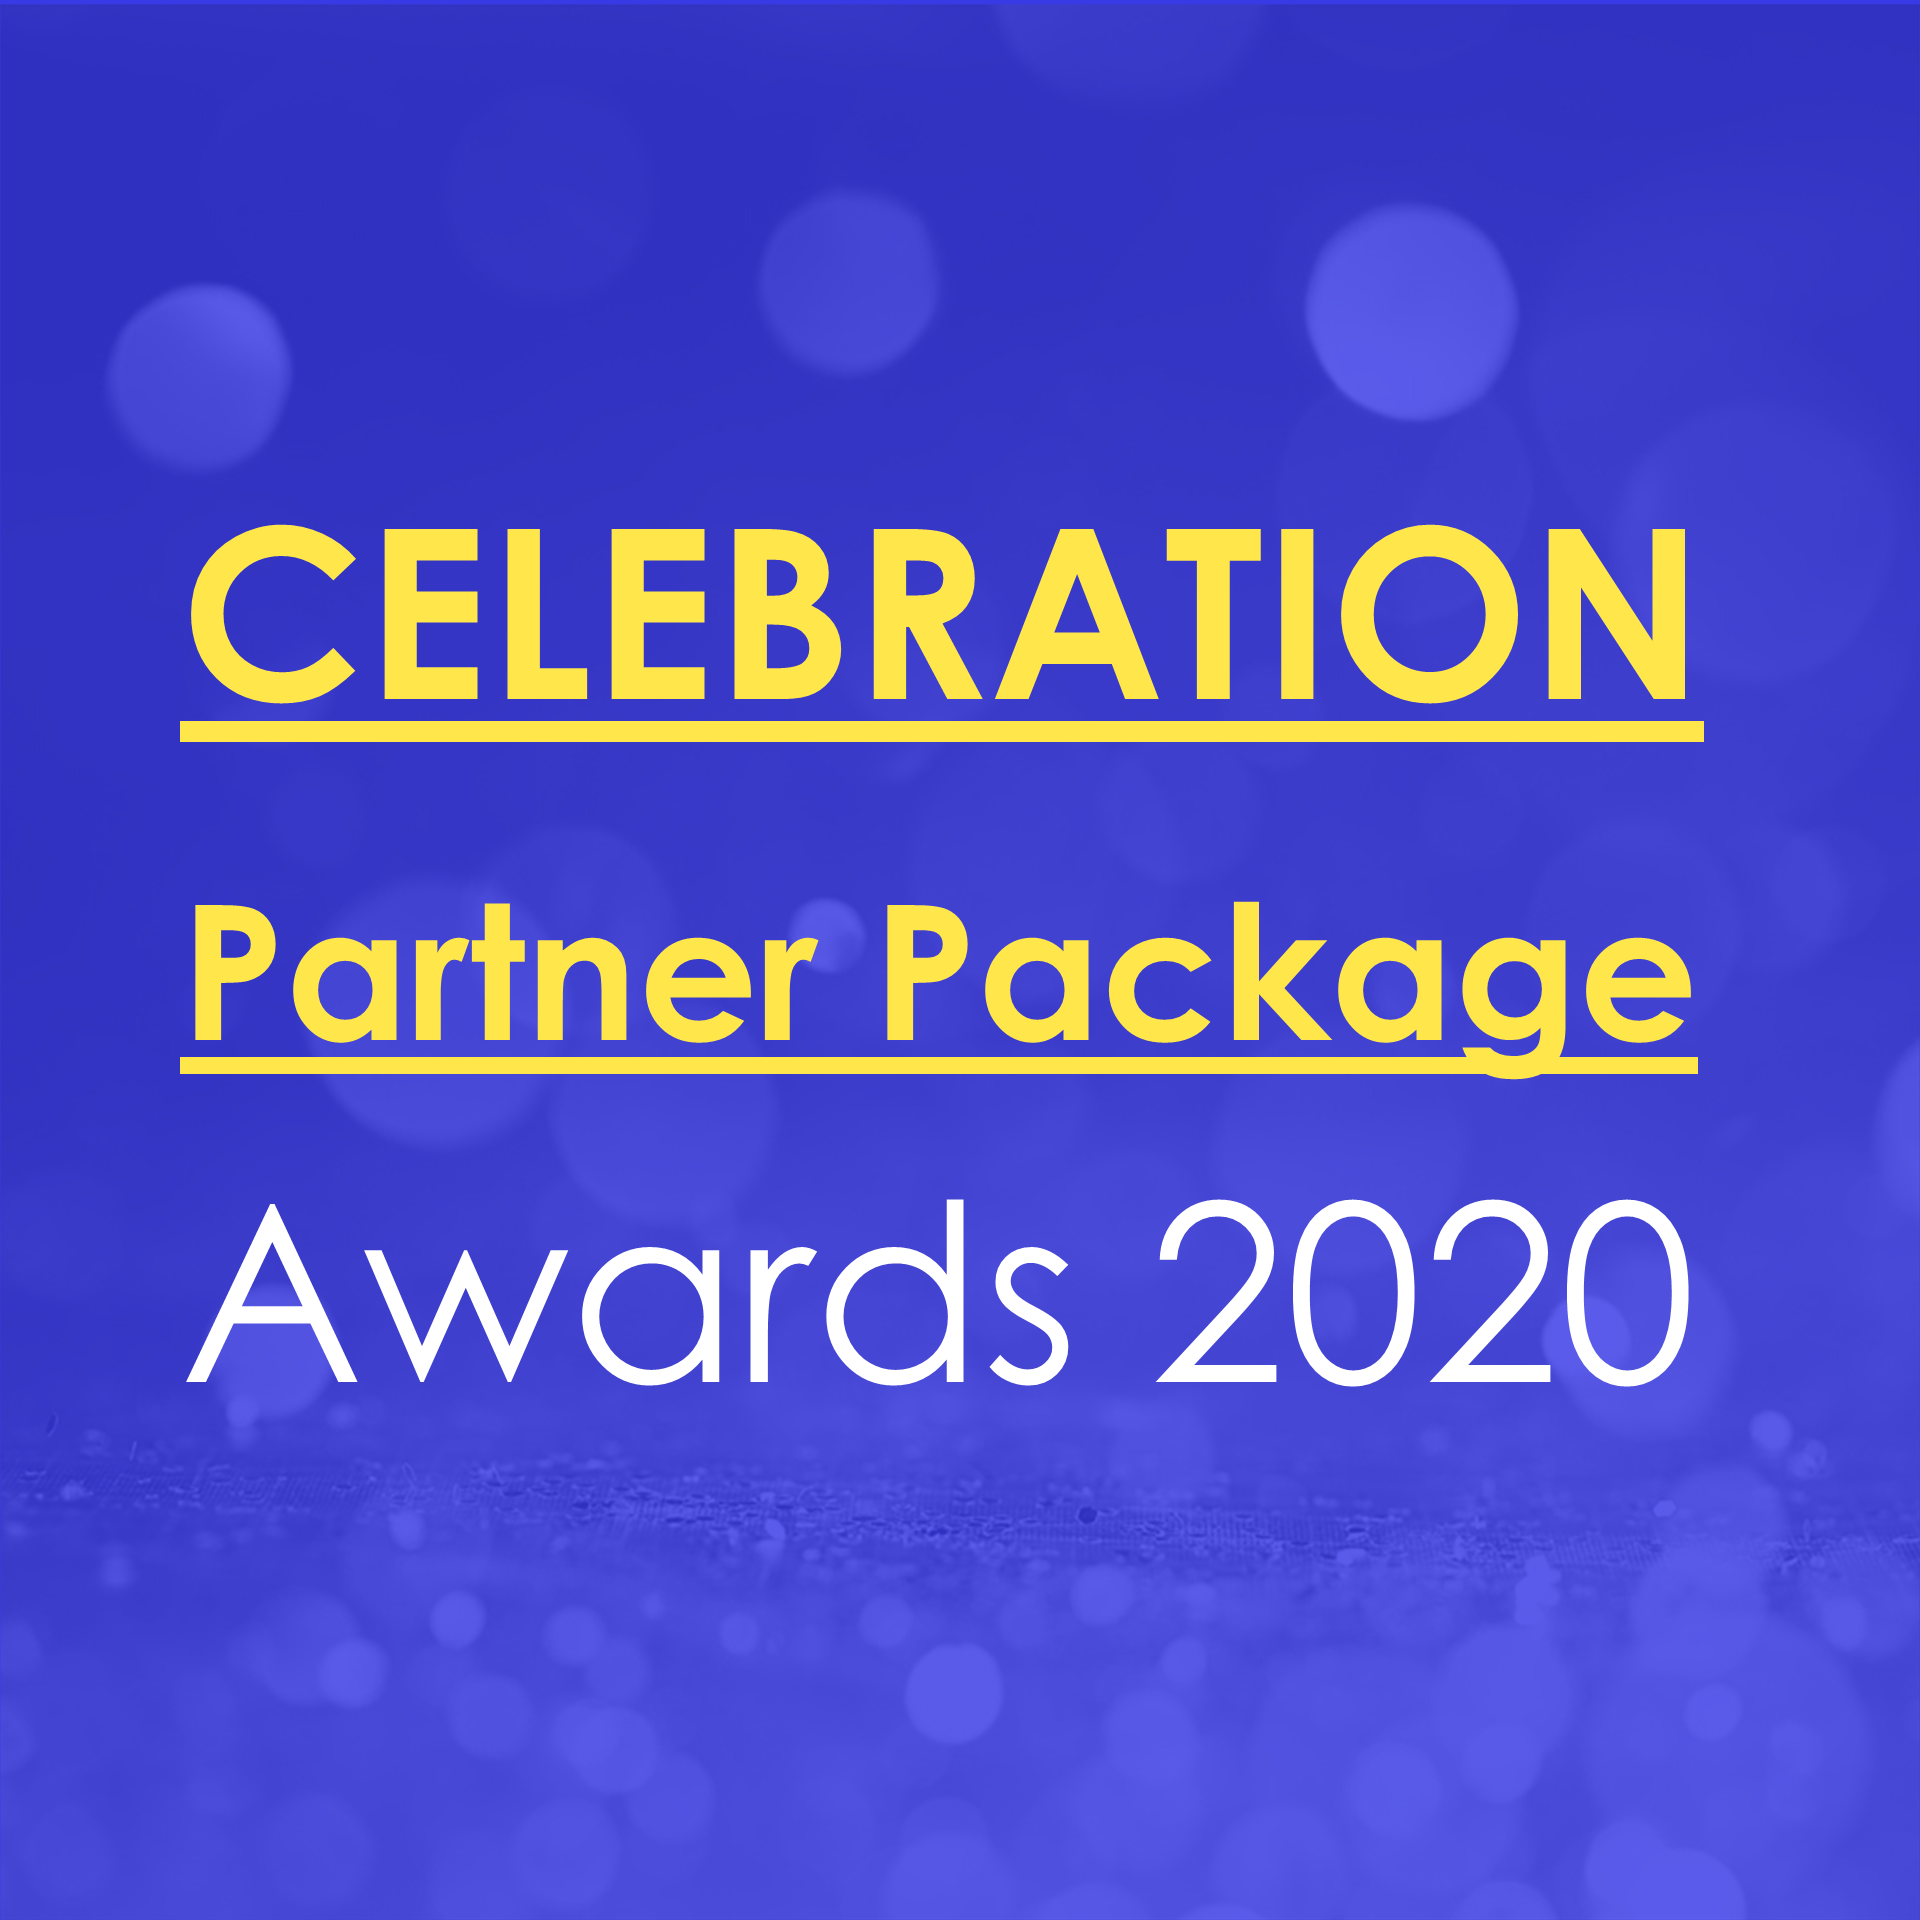 Awards Celebration Partner Package